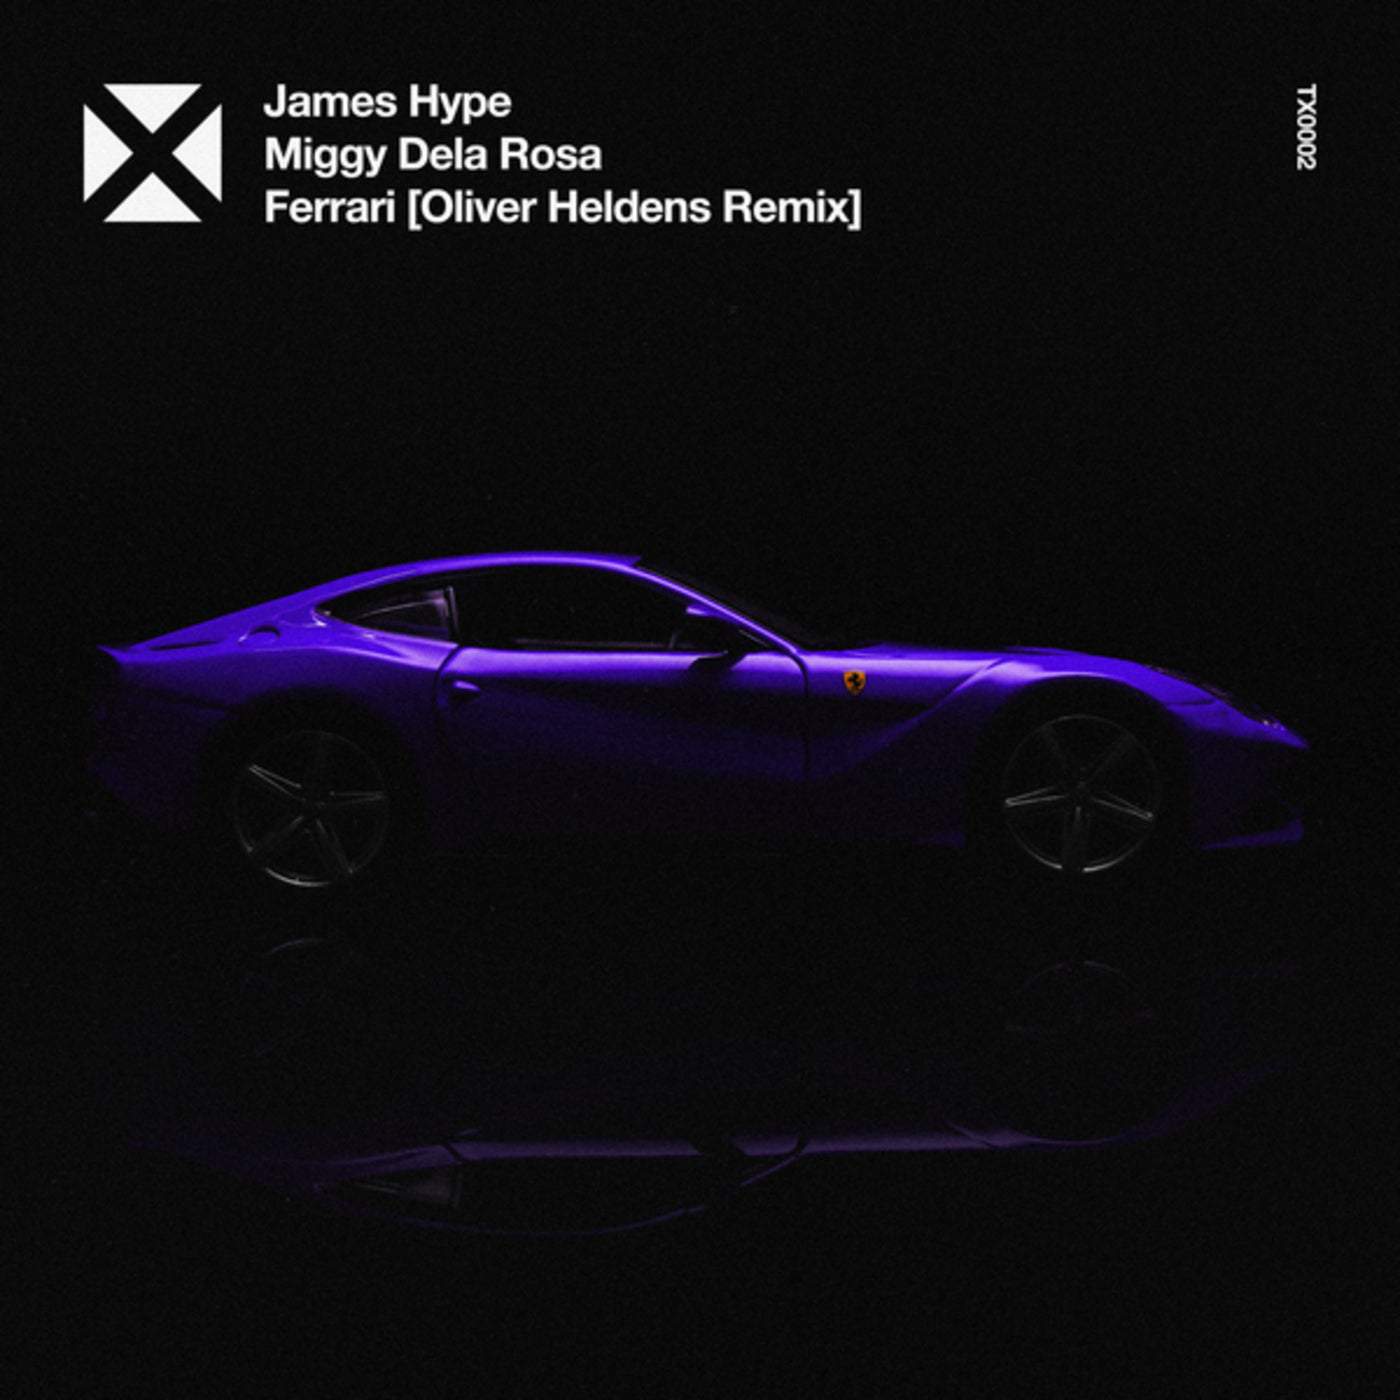 Download James Hype - Ferrari on Electrobuzz